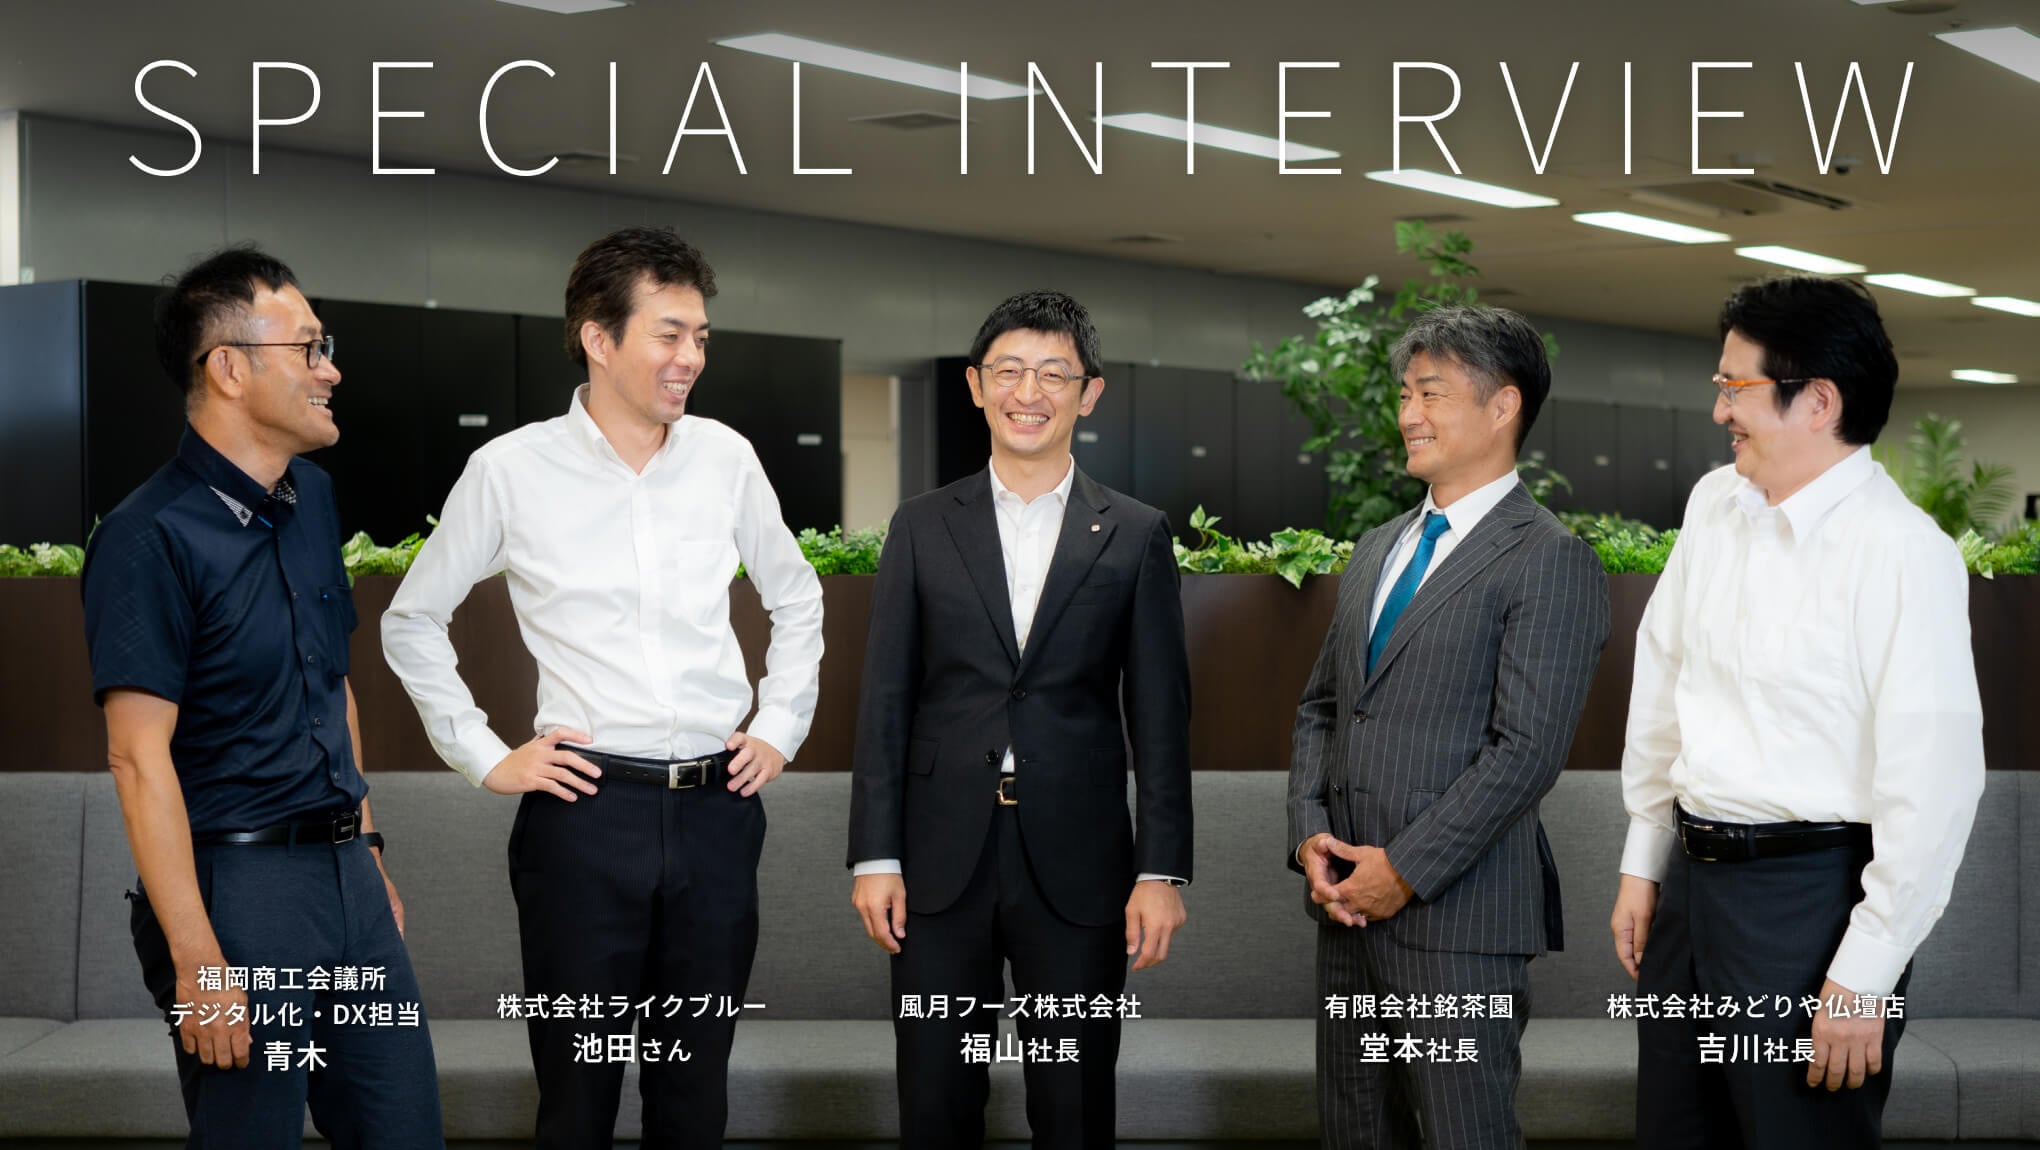 福岡商工会議所主催・特別対談インタビュー記事＆動画が掲載されました